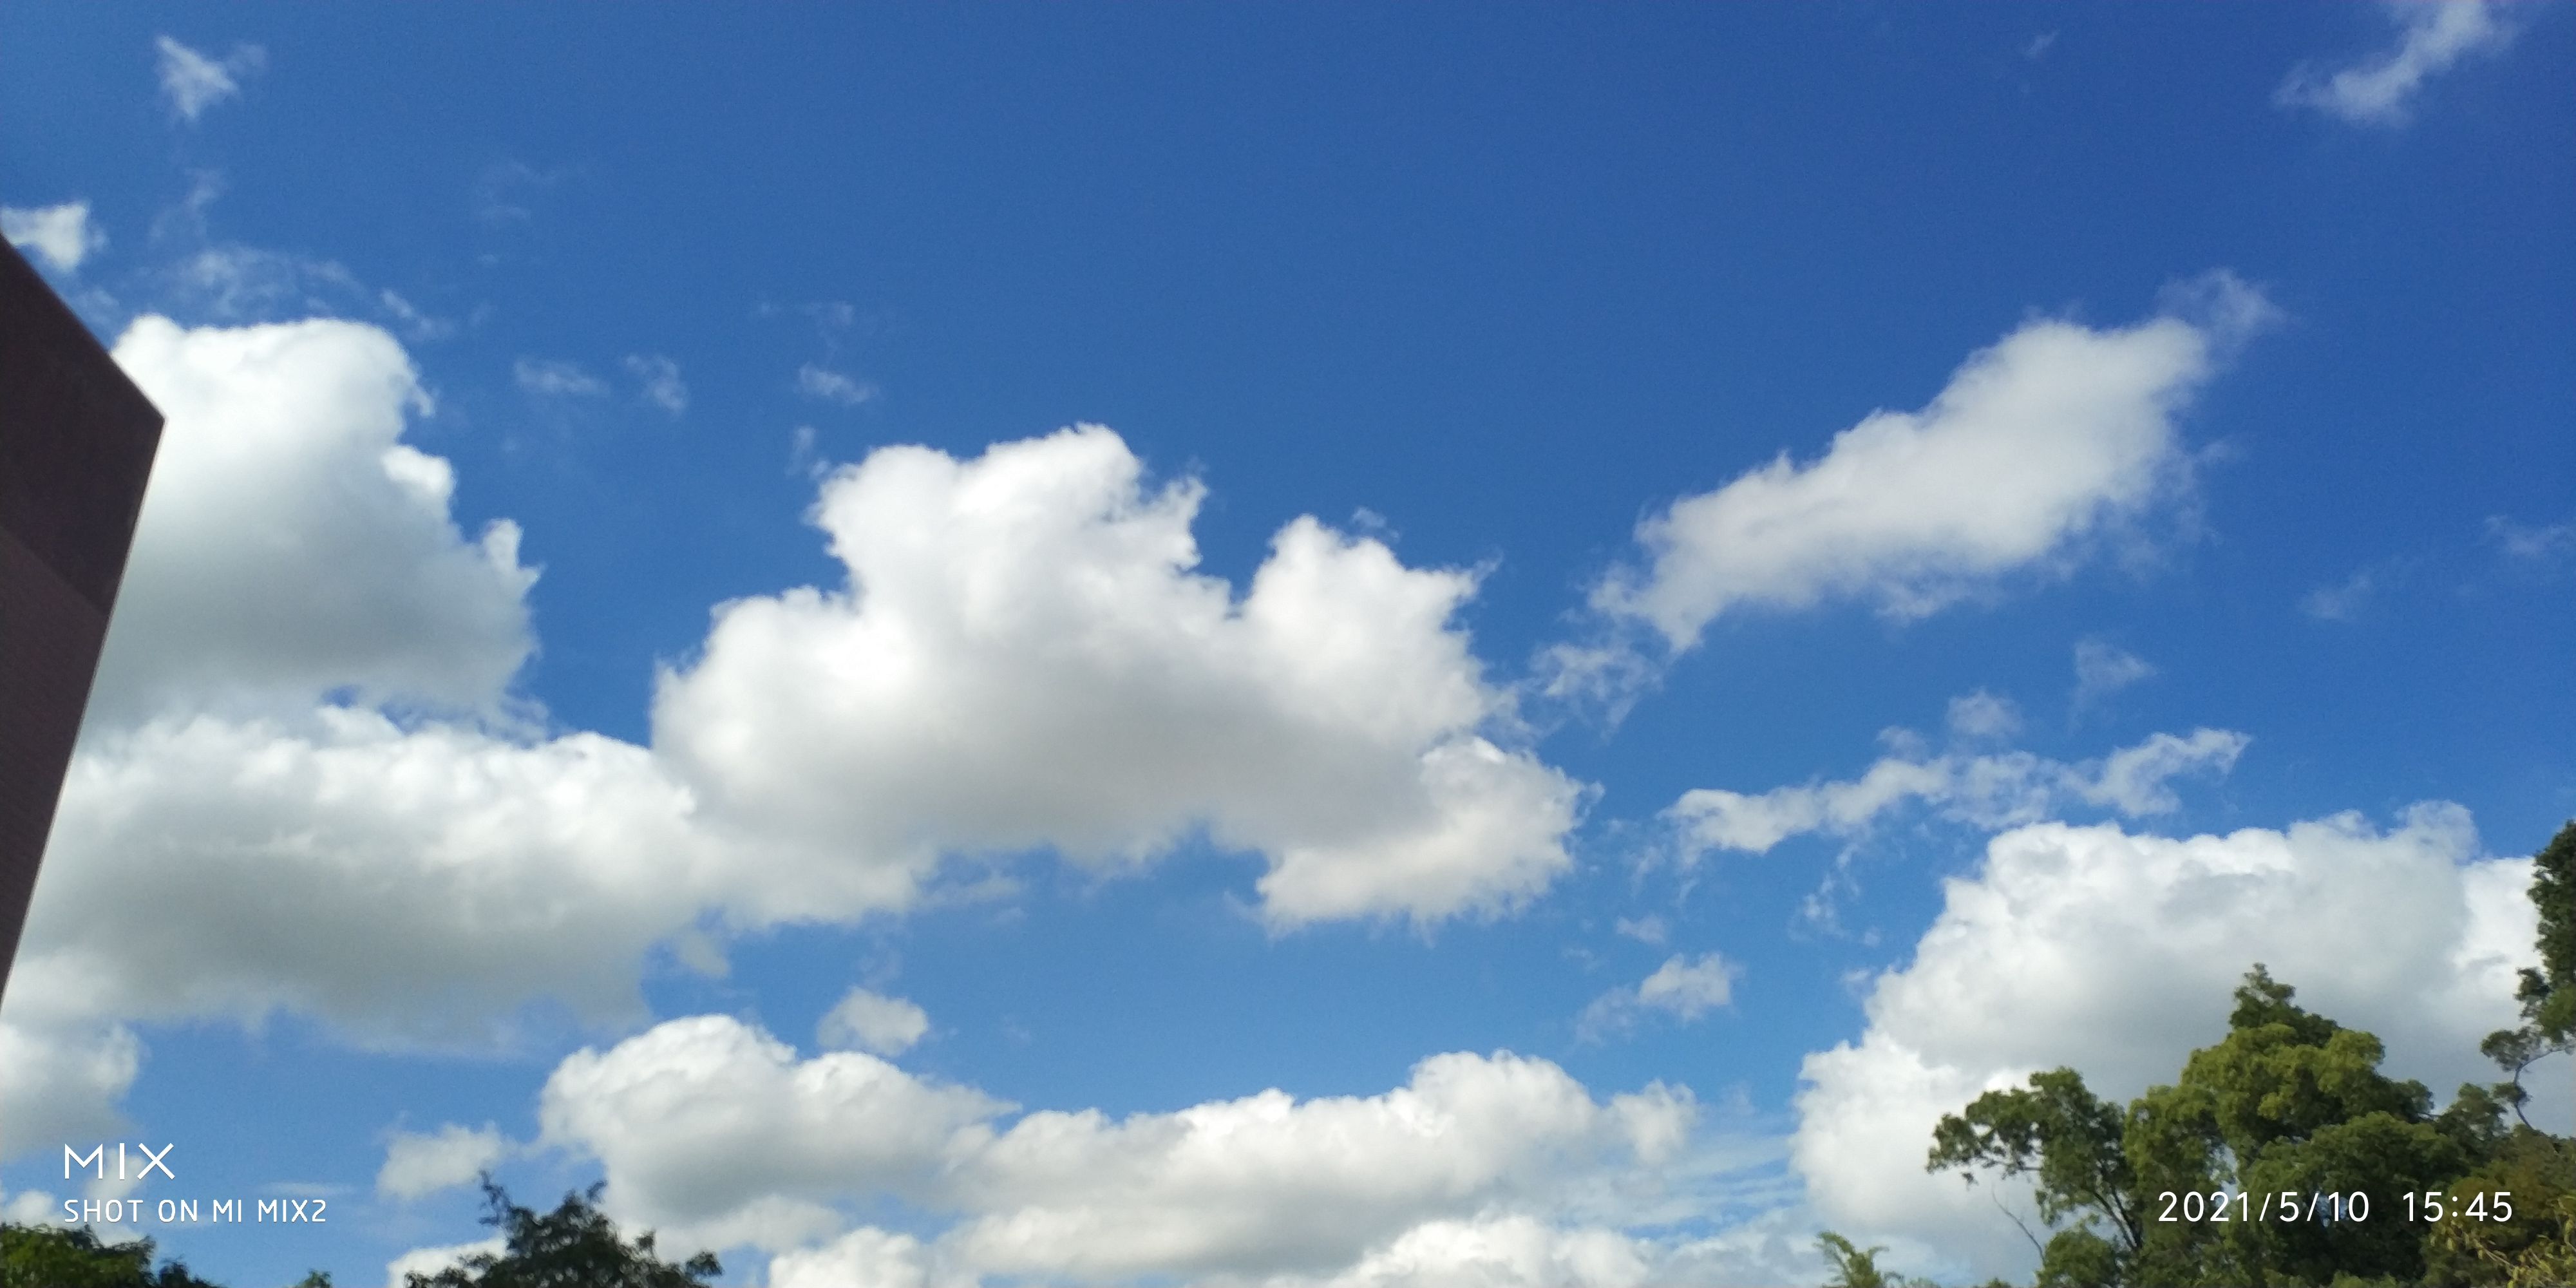 今天的天空蓝的好好看，云也真的好像棉花糖